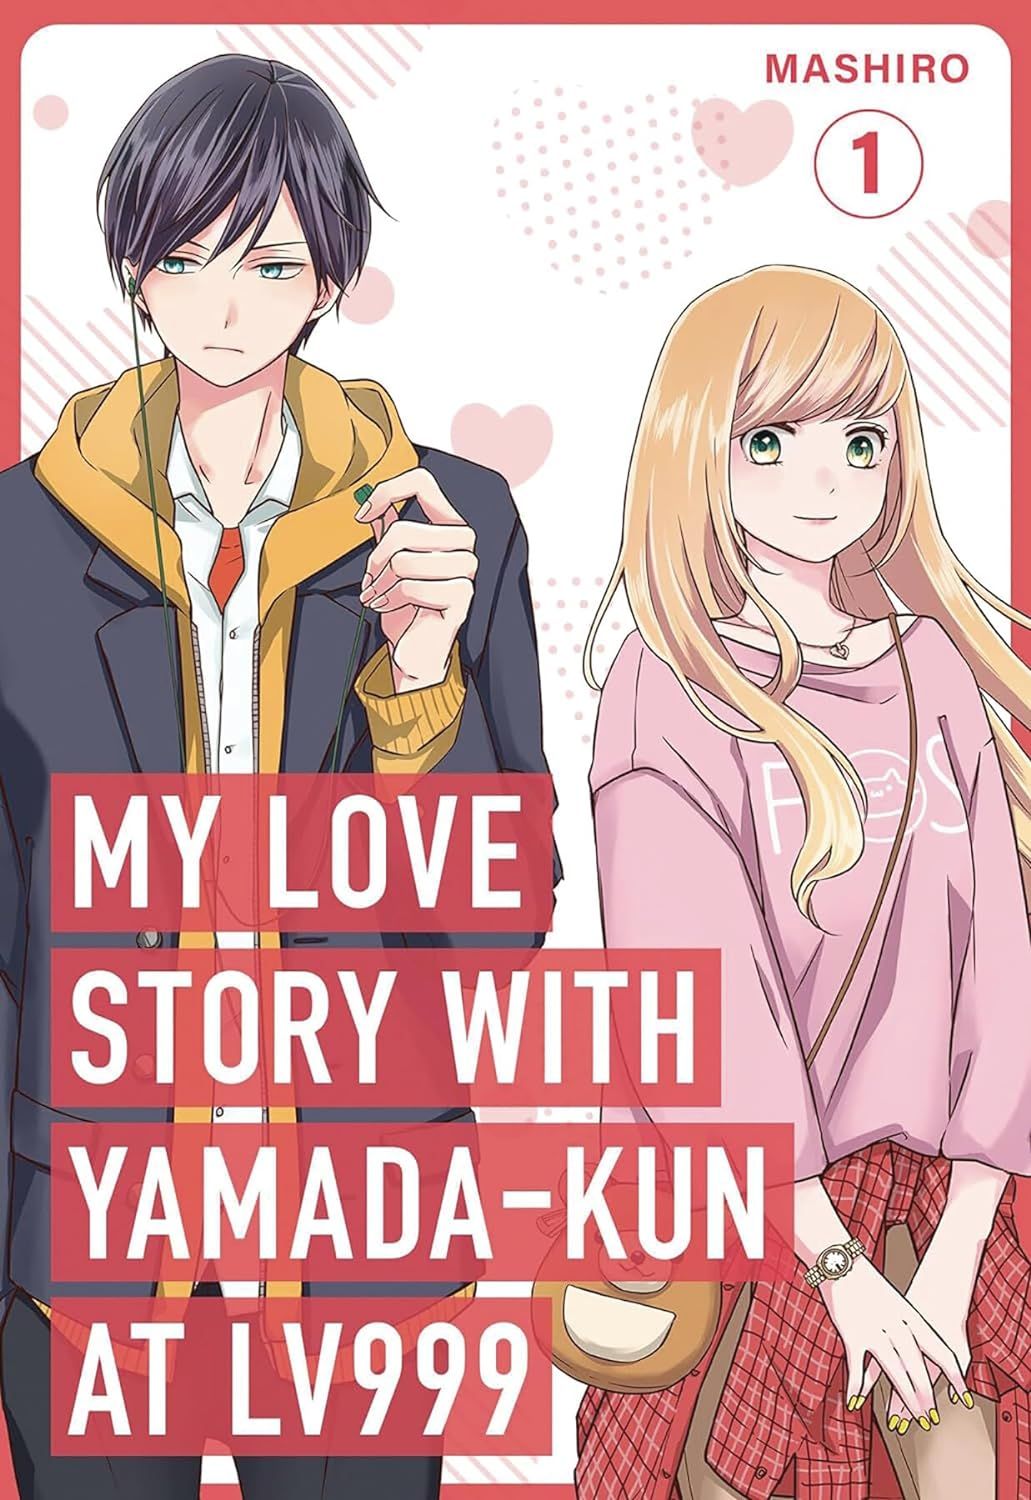 Mon histoire d'amour avec Yamada-kun au niveau 999 par Mashiro